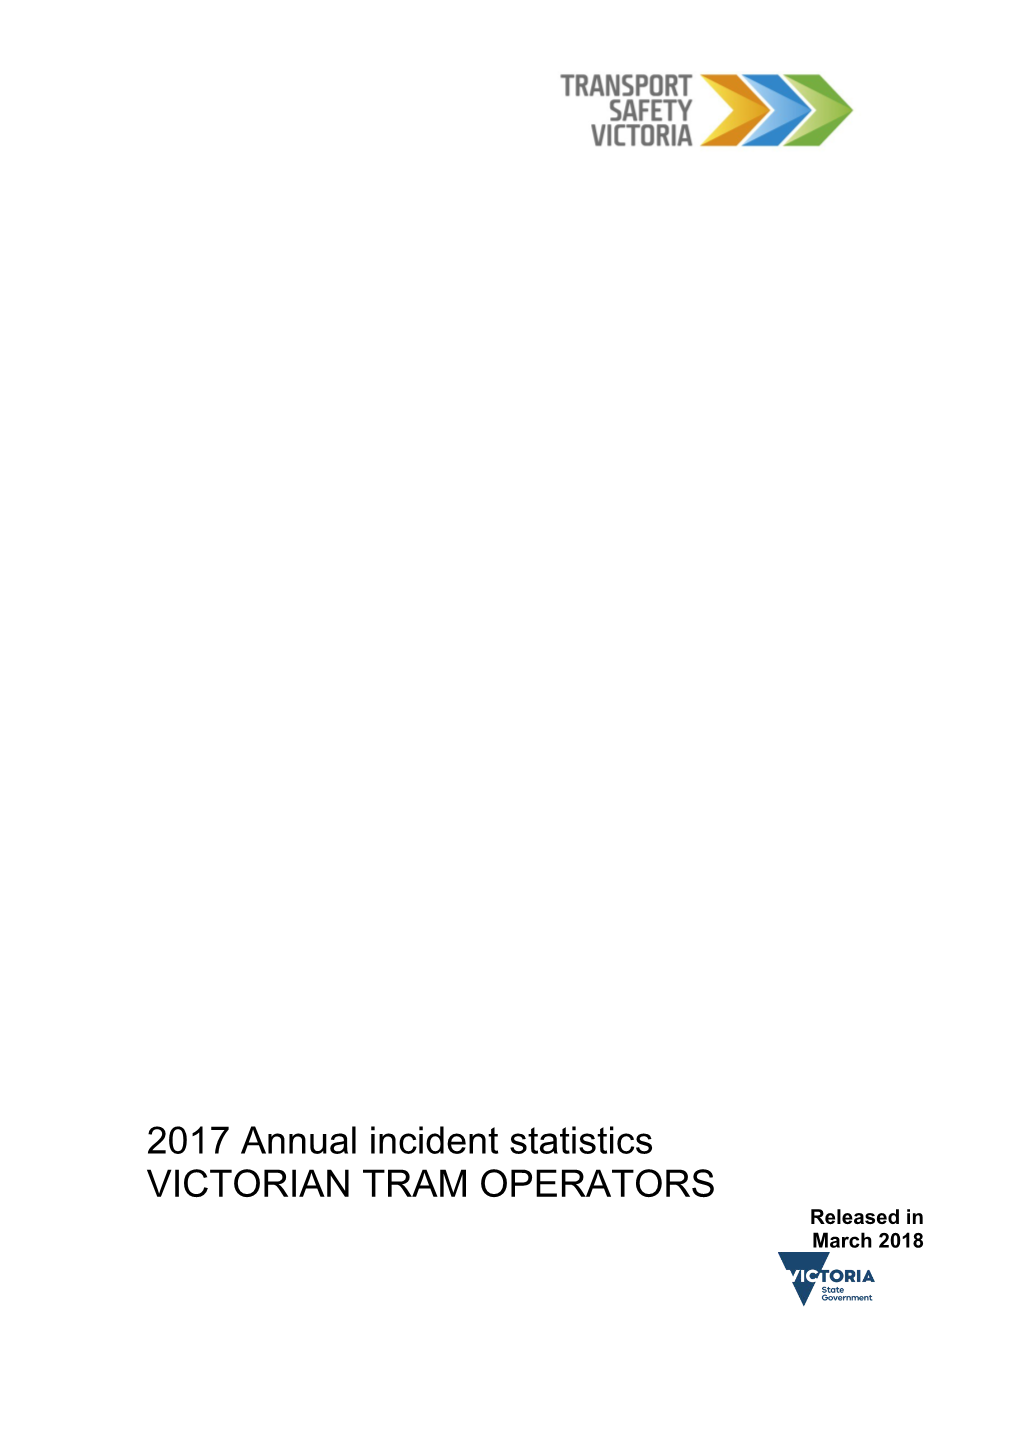 2017 Annual Incident Statistics